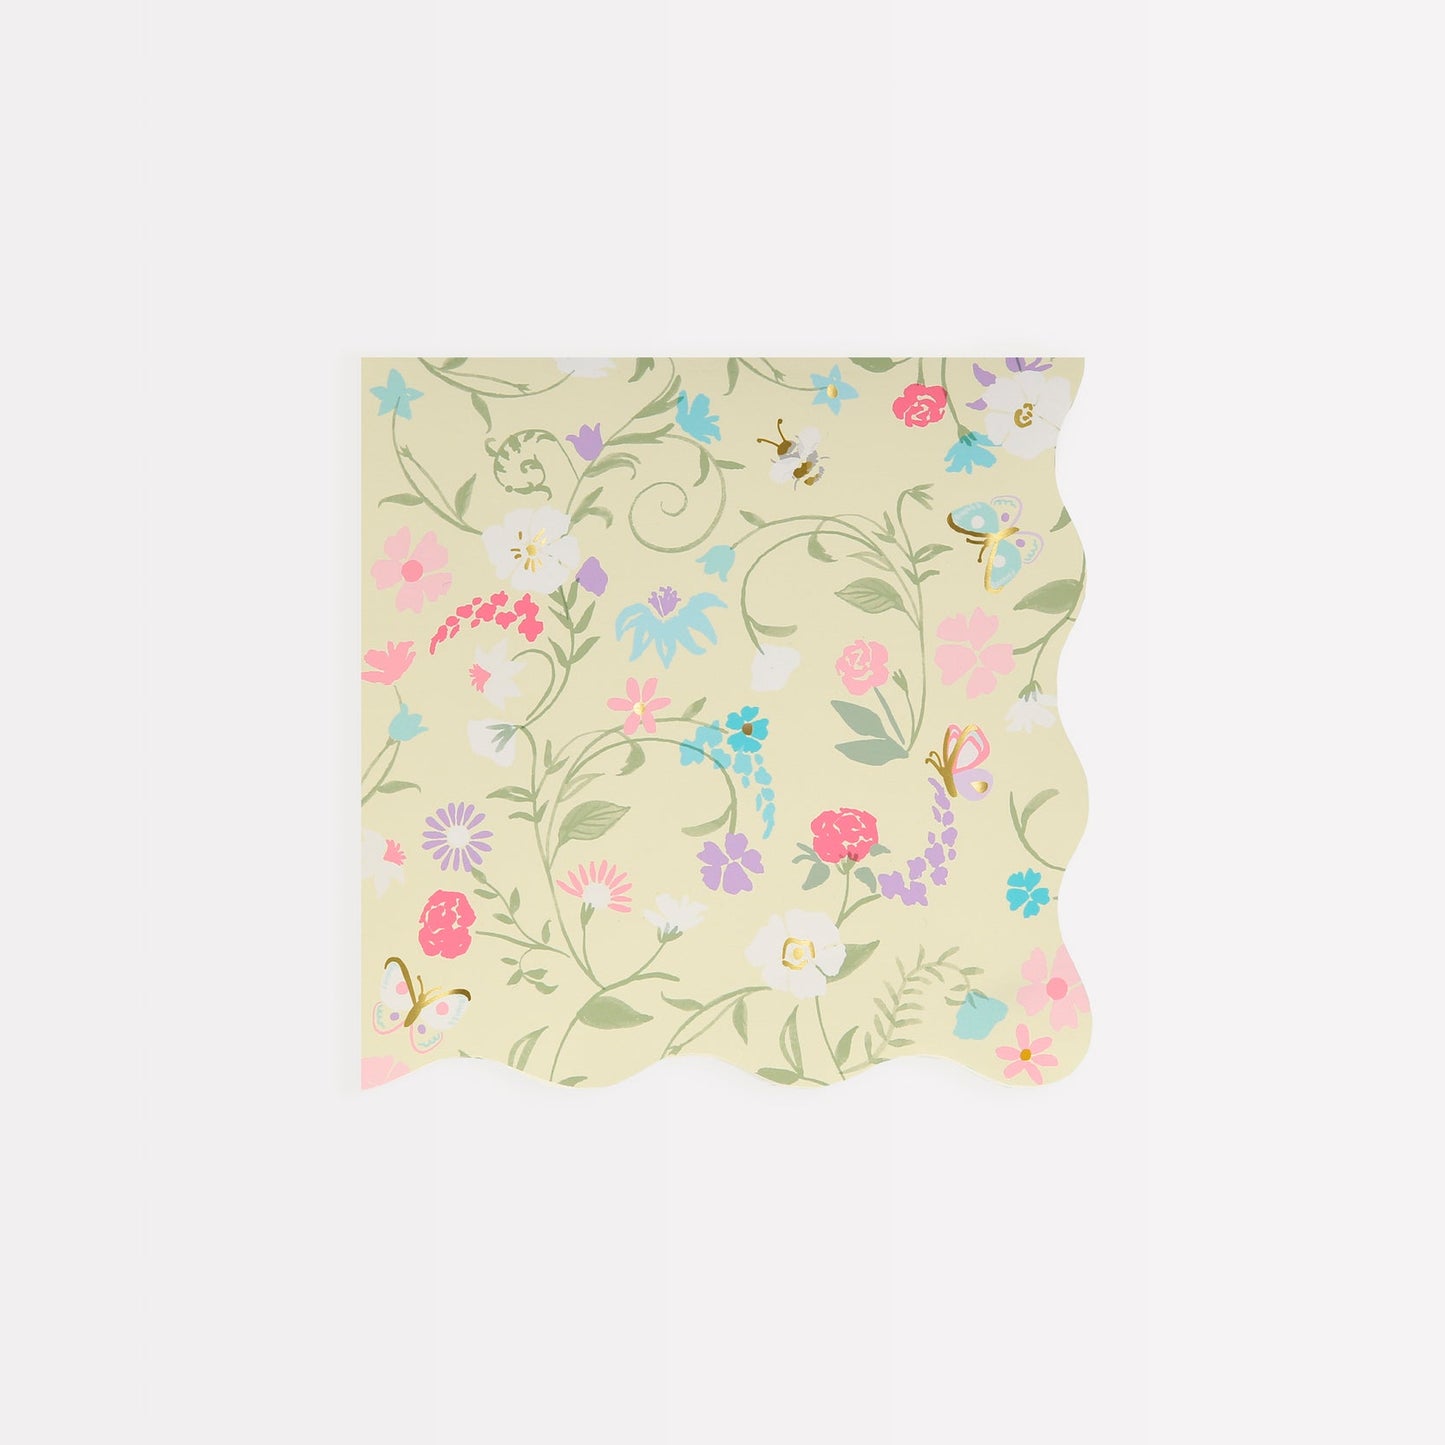 Laduree Floral Small Napkins - 16 pack